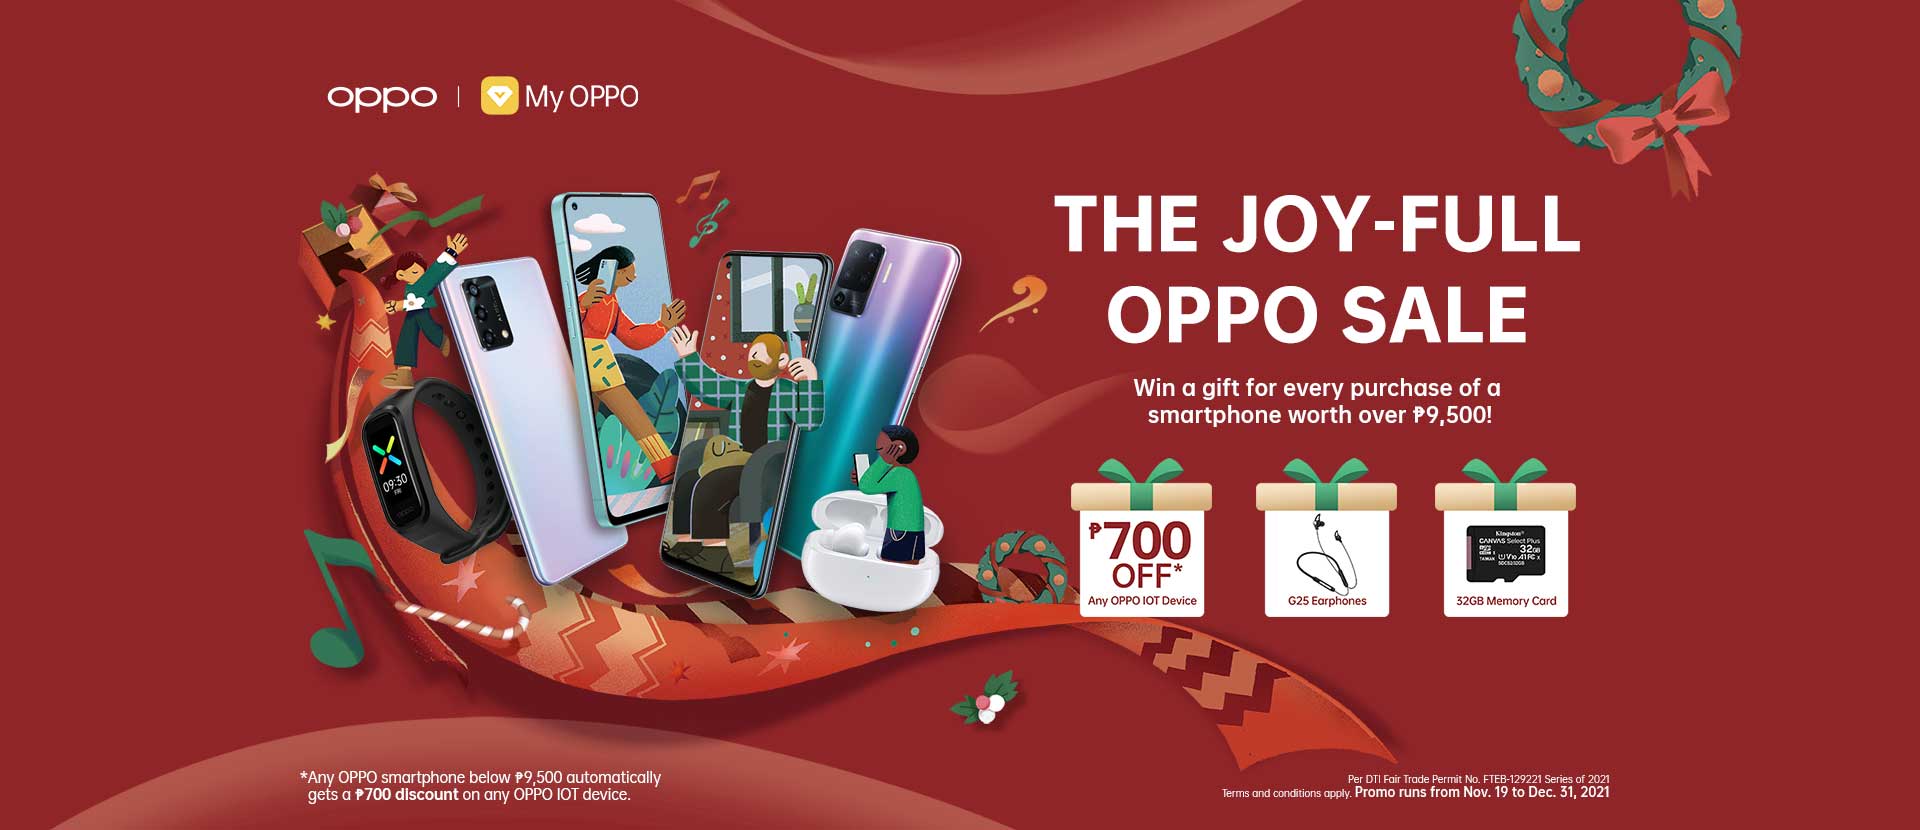 The Joy-full OPPO Sale 2021